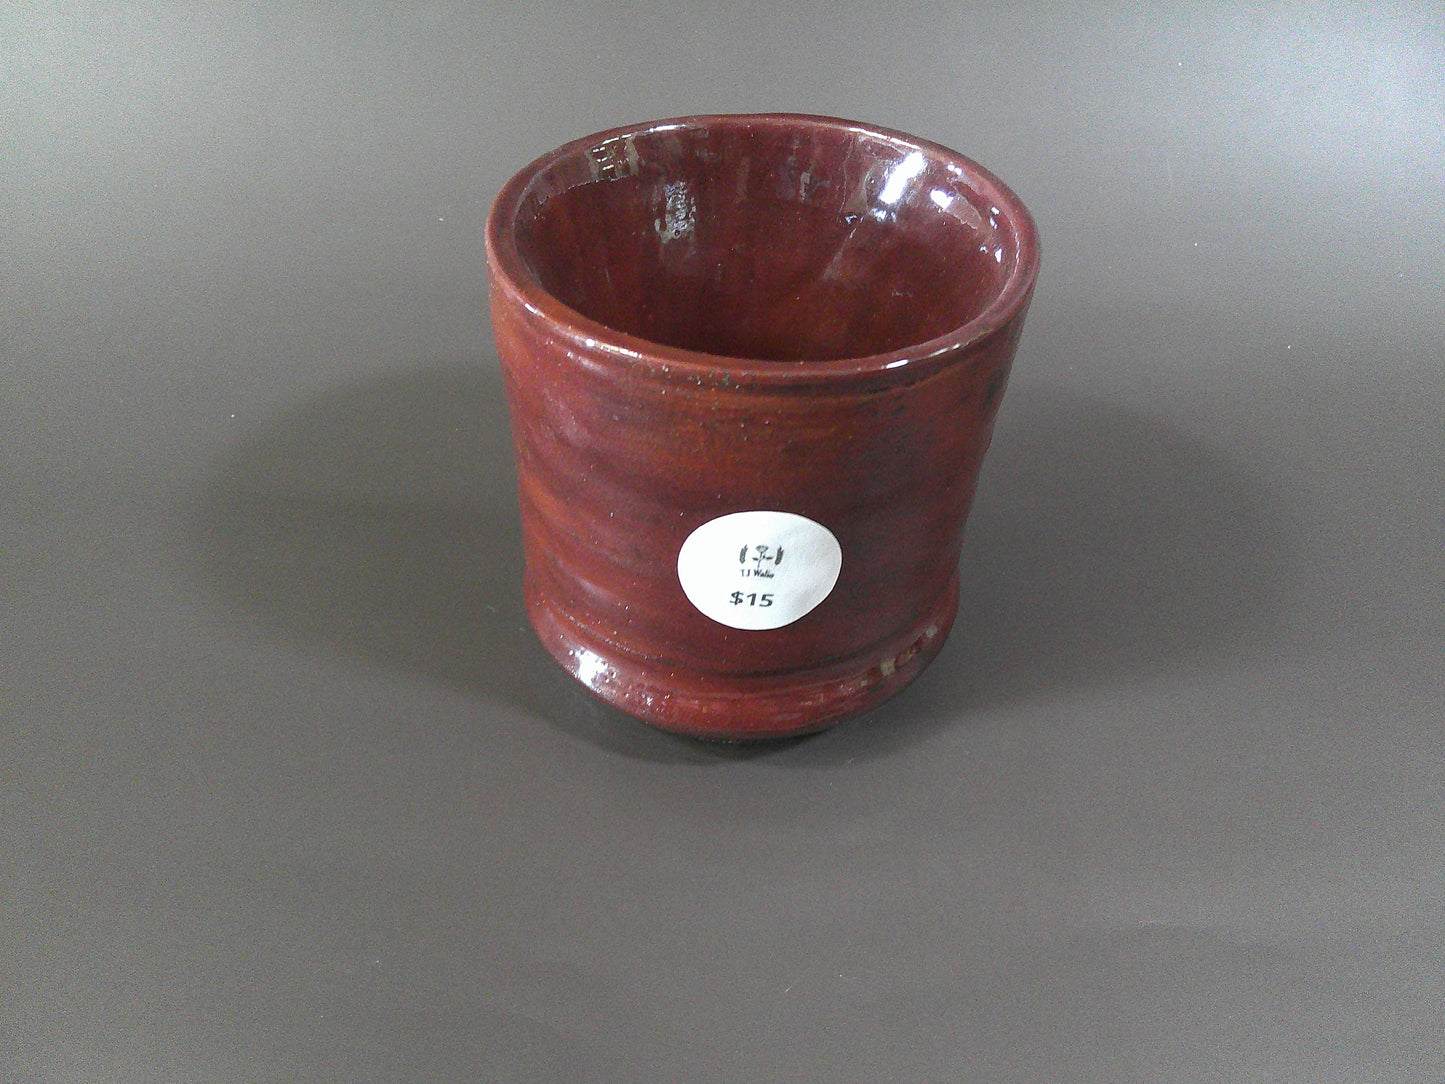 Burgundy Pottery piece $15